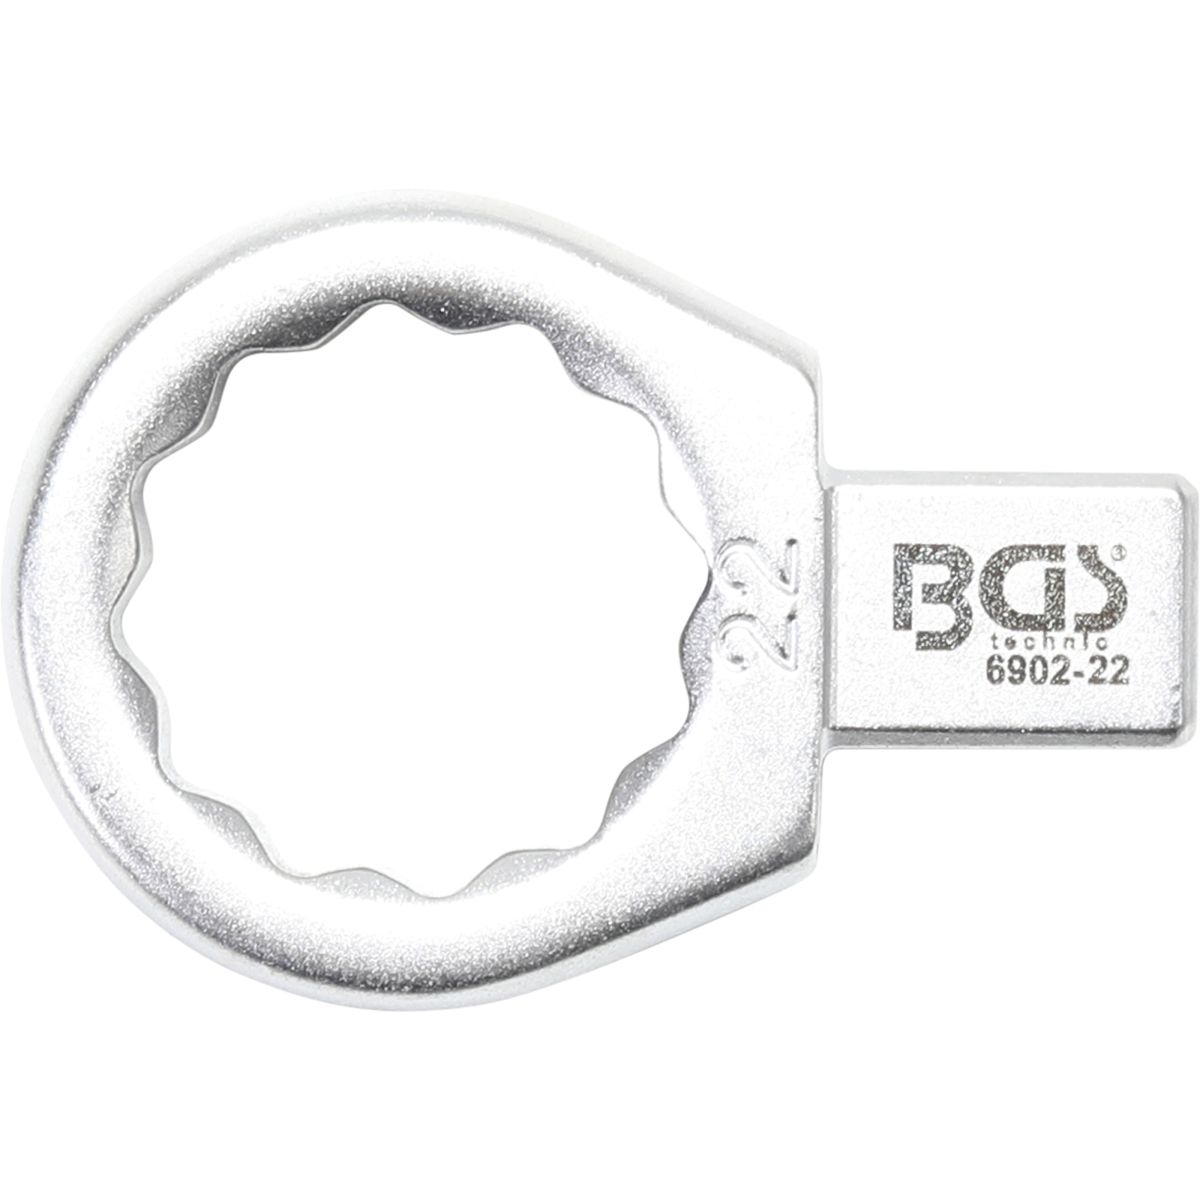 Llave de anillo insertable | 22 mm | Sujeción 9 x 12 mm